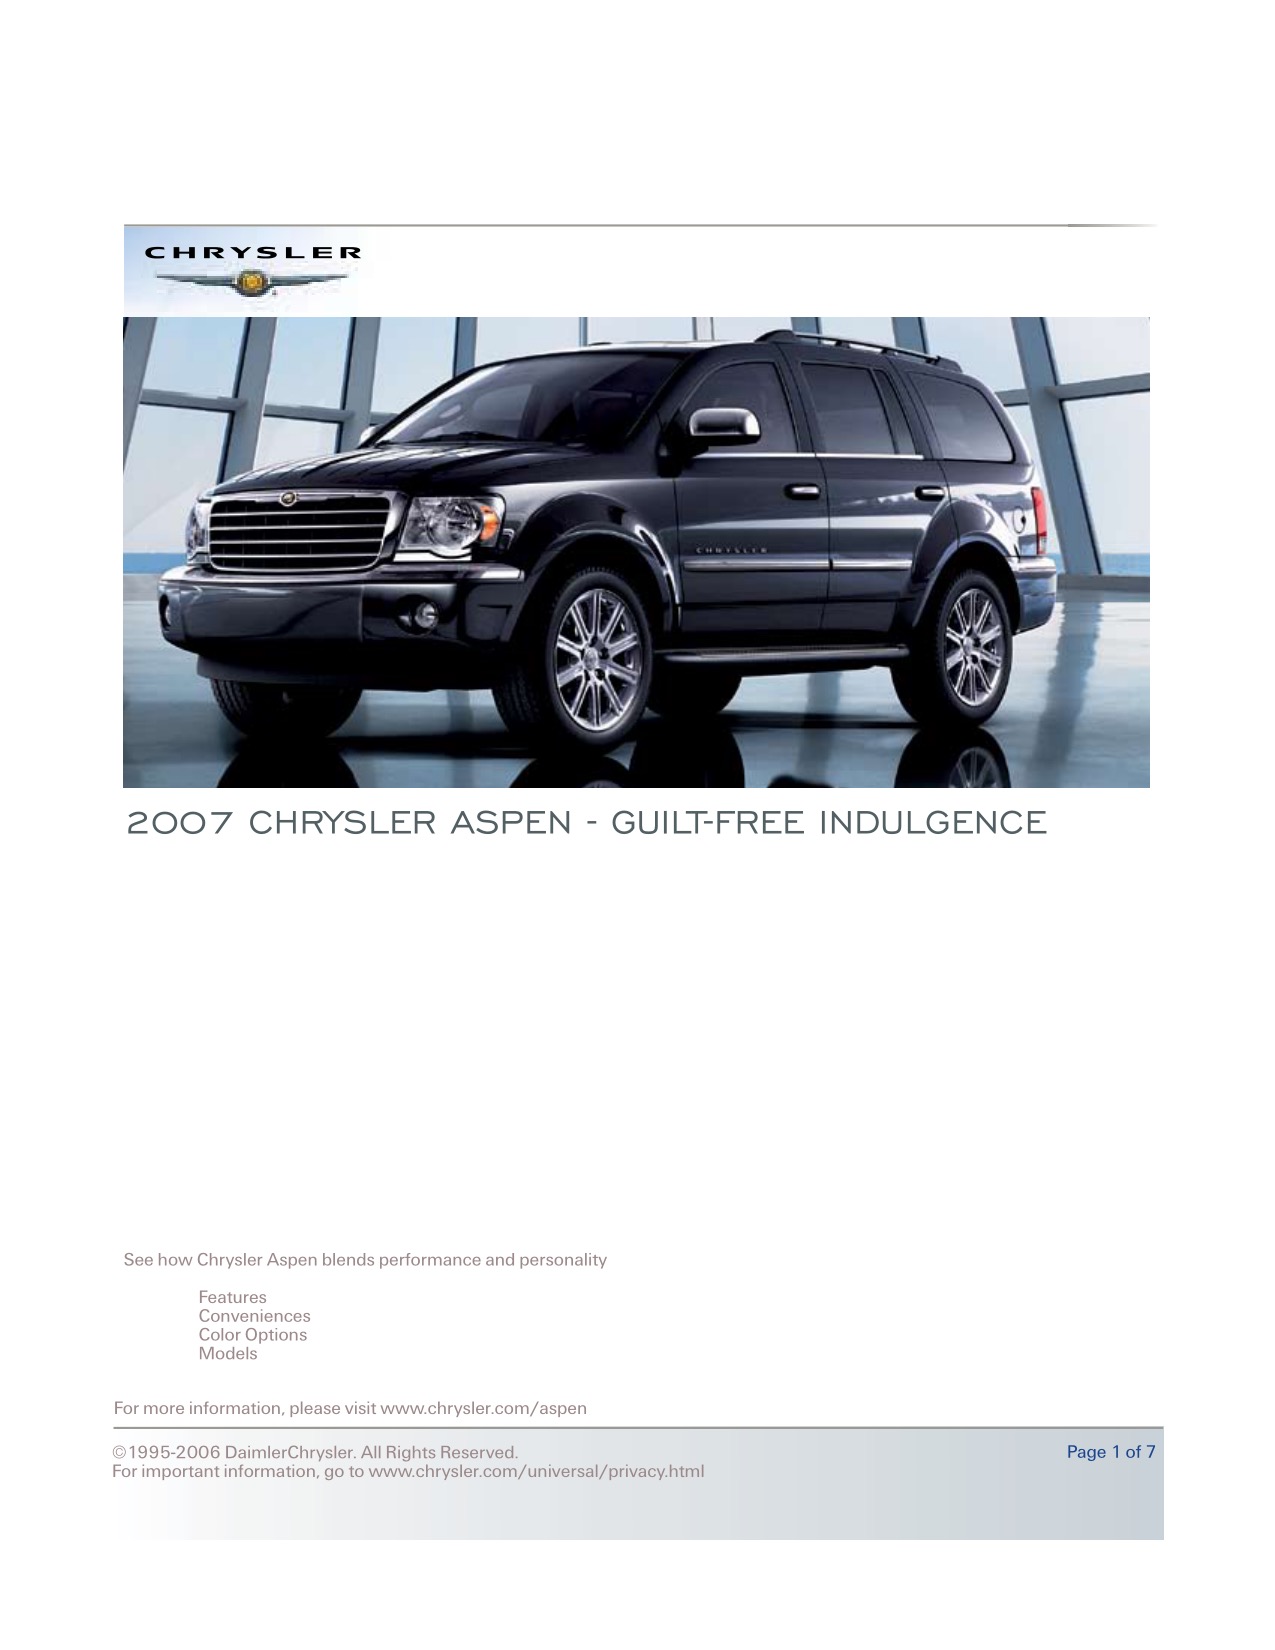 2007 Chrysler Aspen Brochure